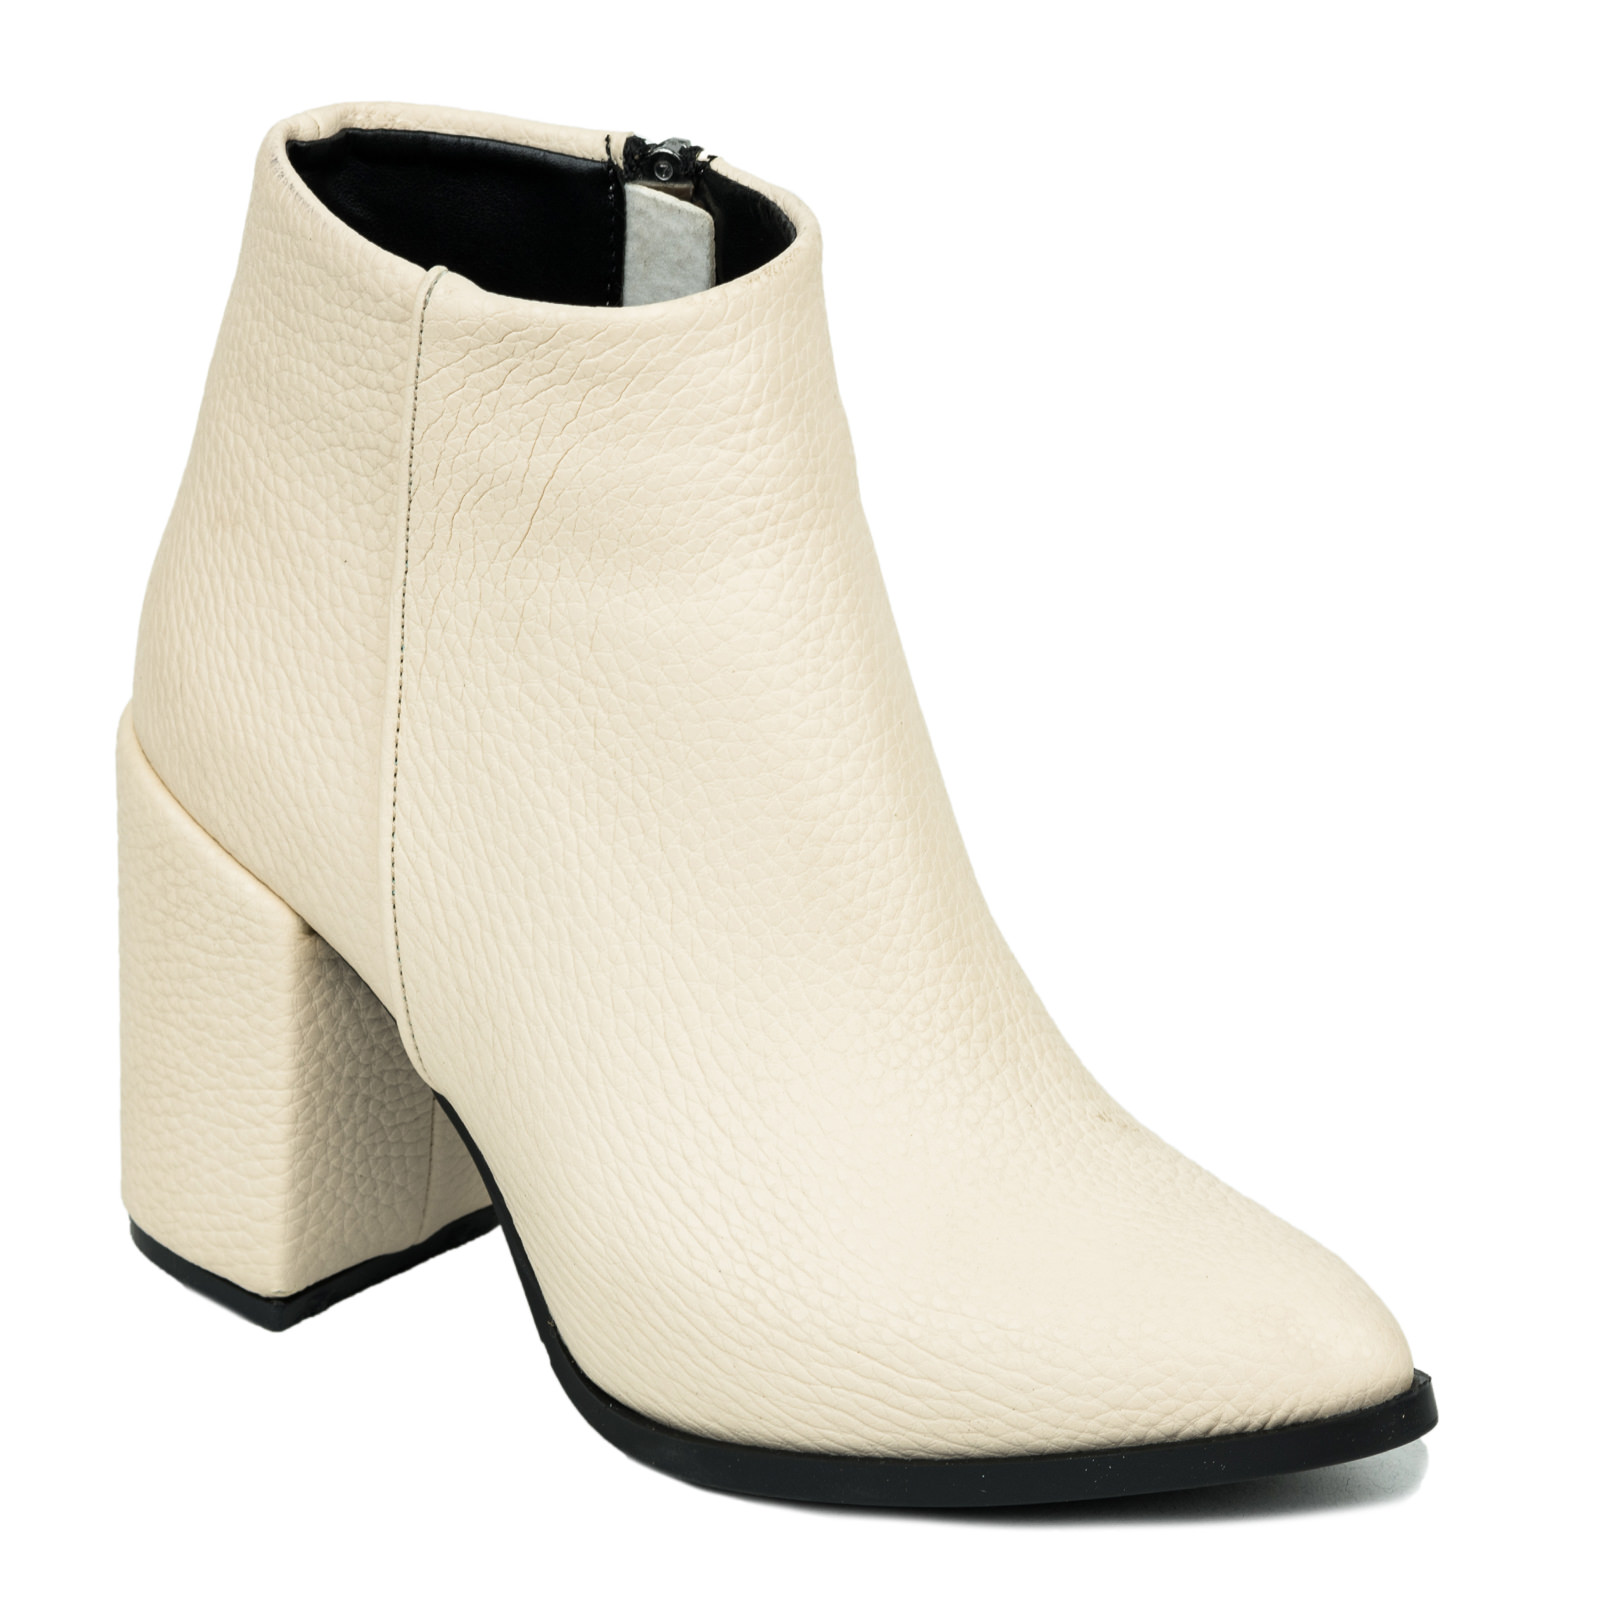 Women ankle boots B164 - BEIGE